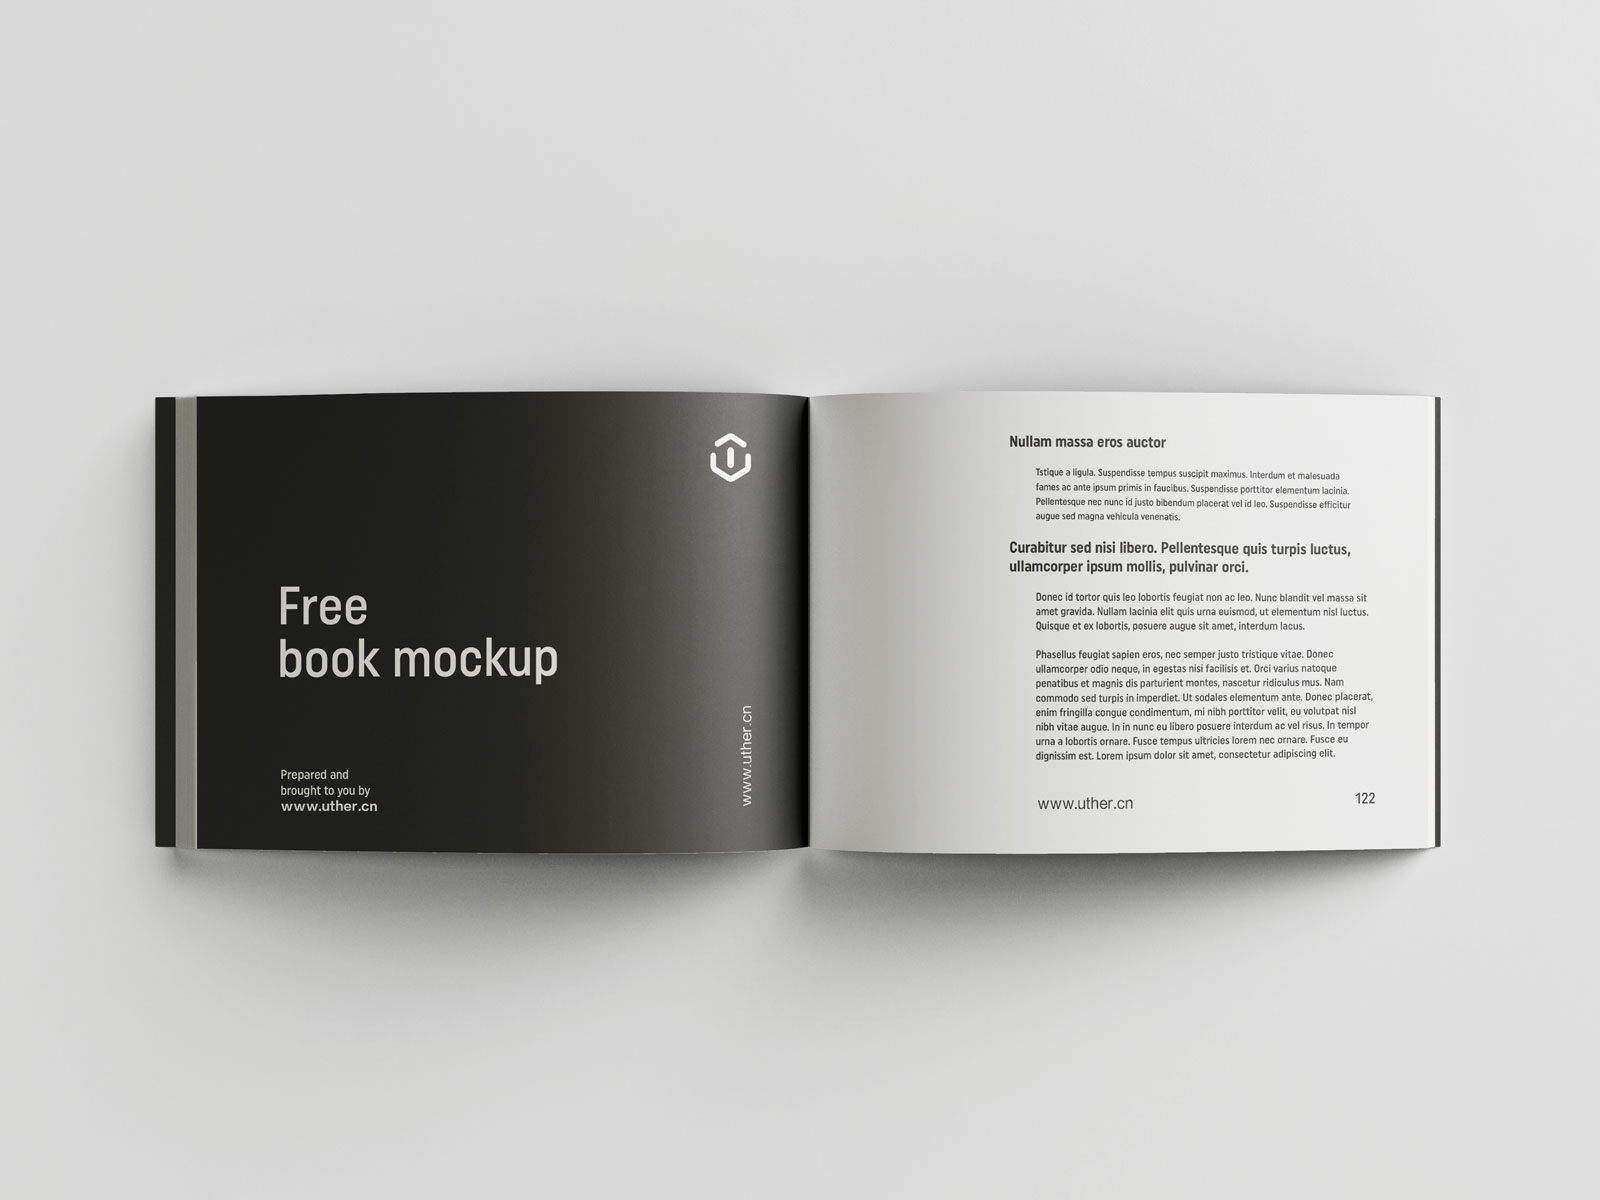 简约大气平装横向书籍设计内页展示提案贴图PSD样机模版book mockup